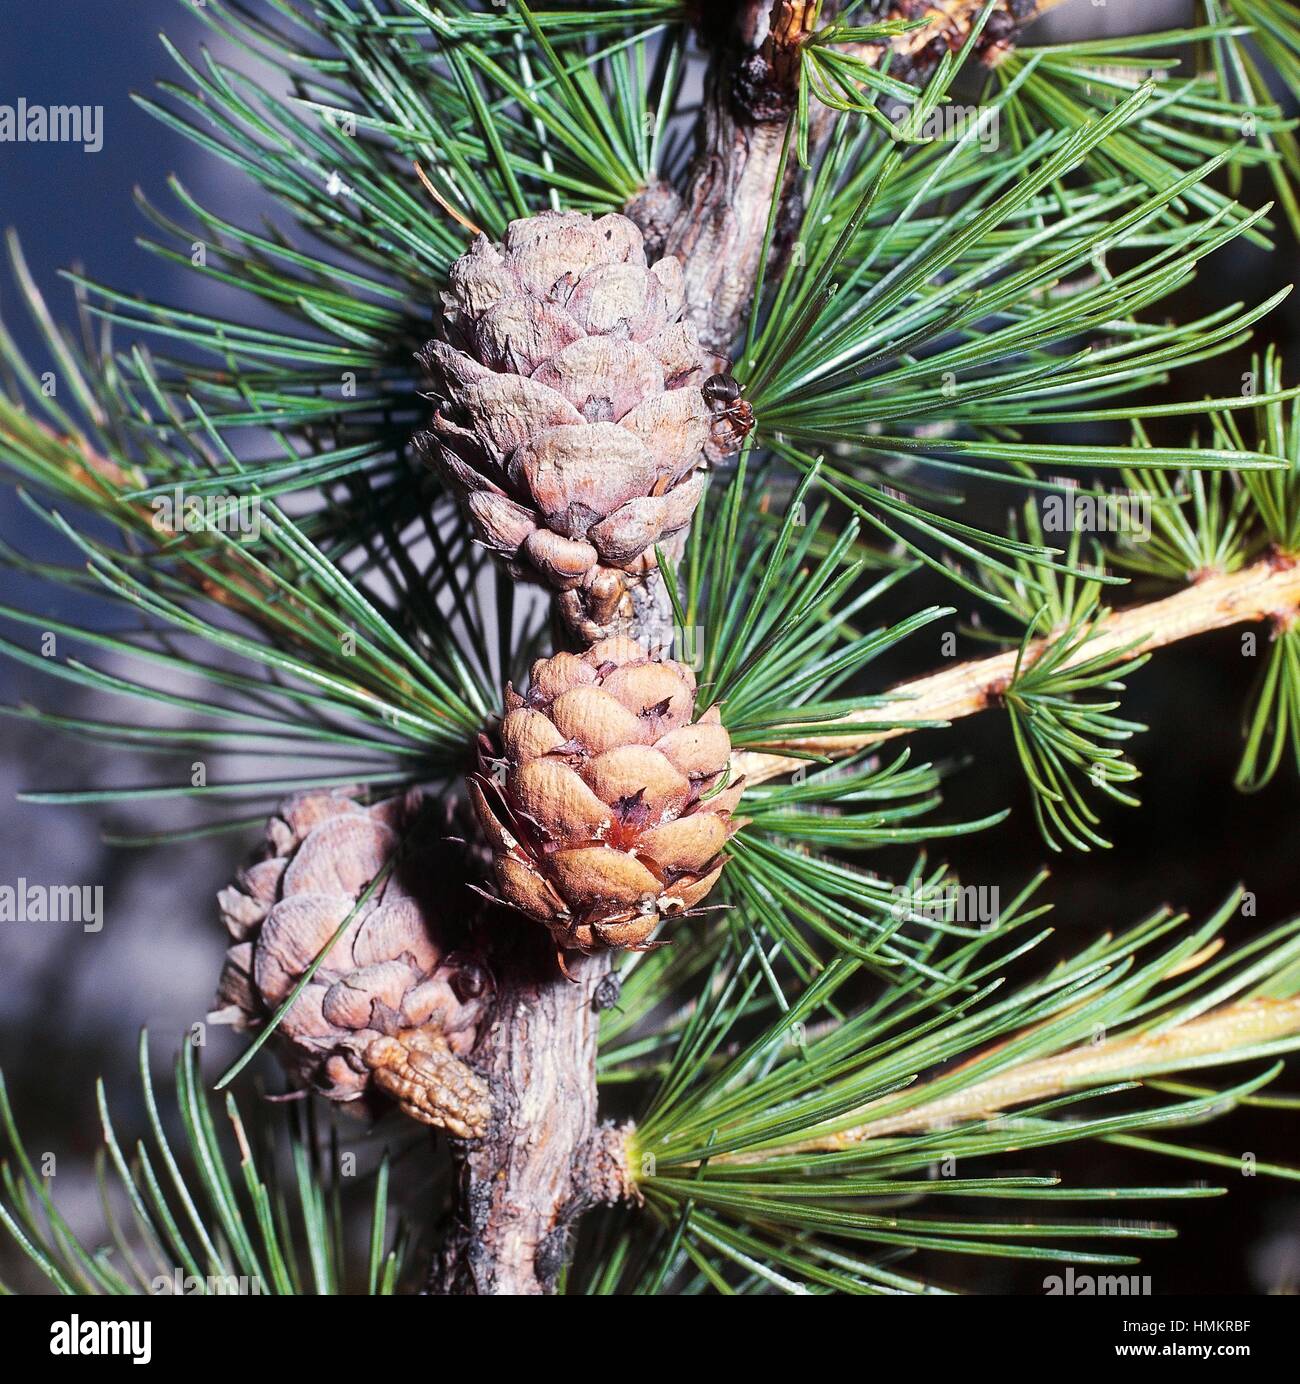 Larch cones (Larix sp), Pinaceae. Stock Photo